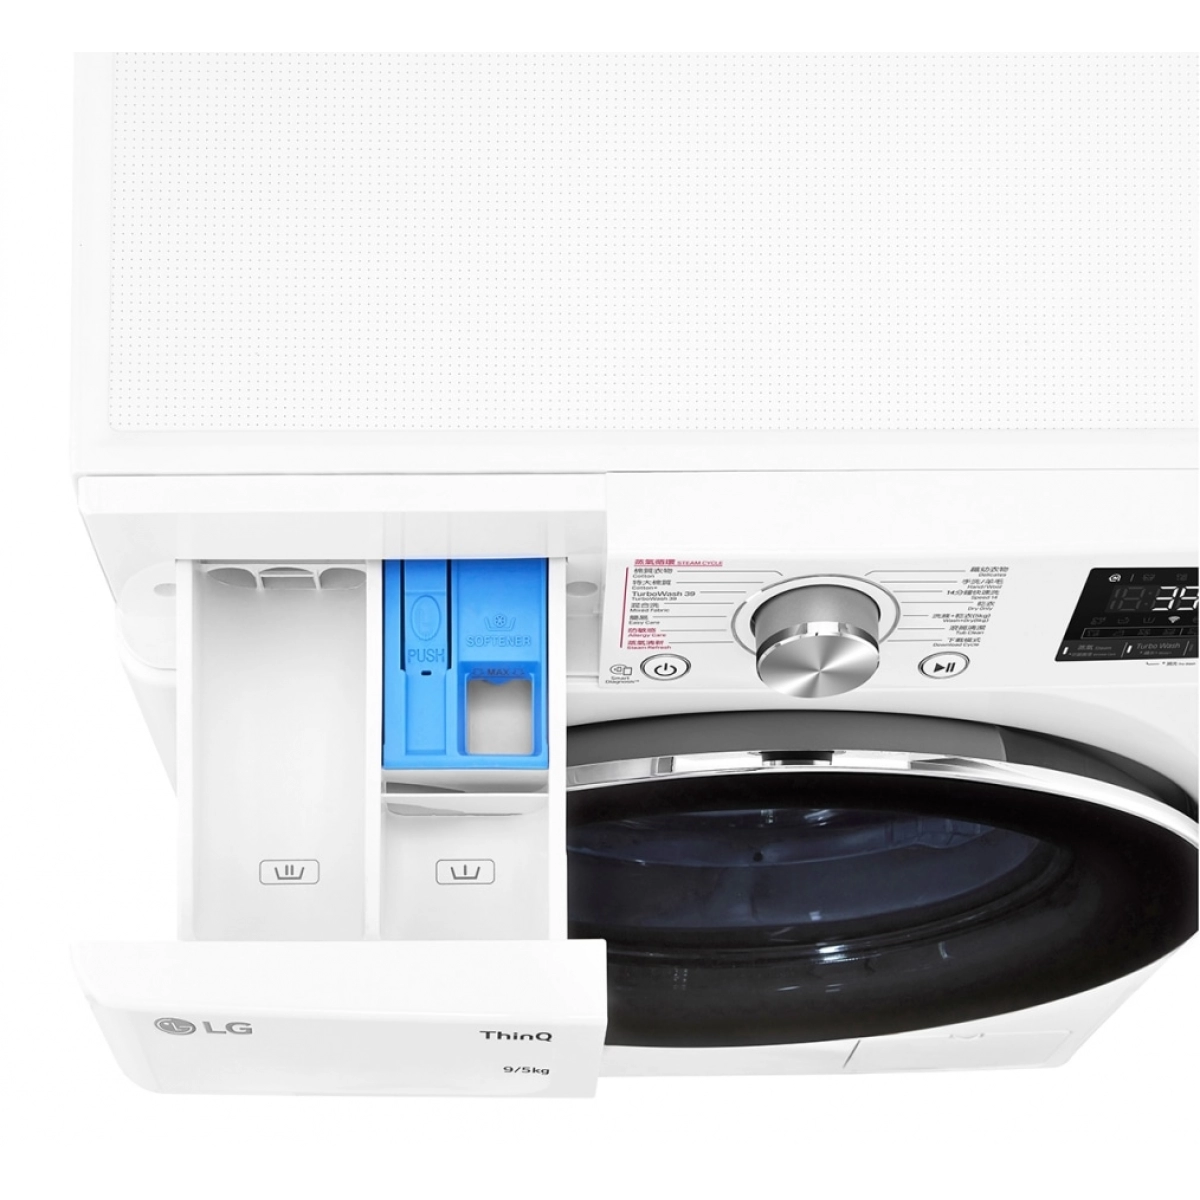 LG FV9A90W2 9.0/5.0公斤 1200轉 Vivace 人工智能洗衣乾衣機 (此為 F-C12085V2W 新型號)